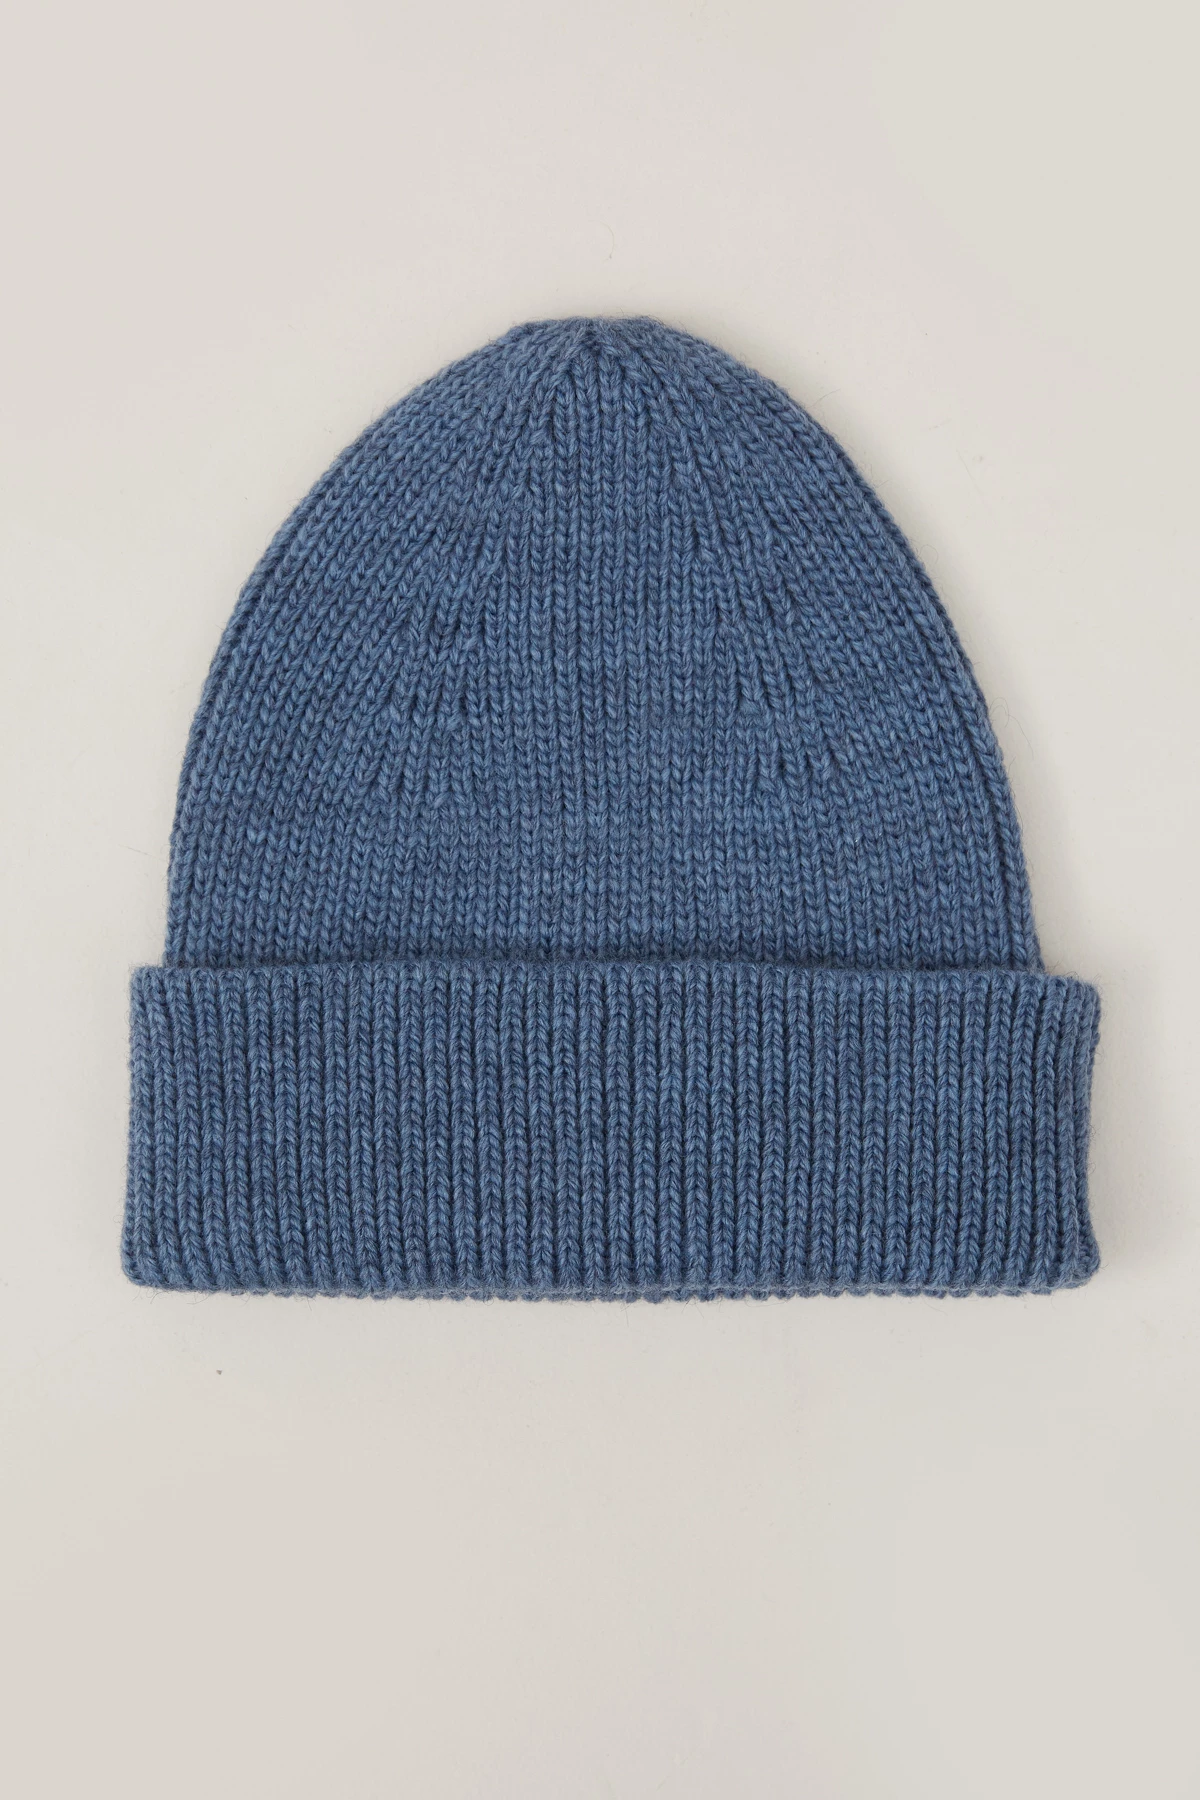 В'язана шапка біні з вовни синього кольору, фото 2